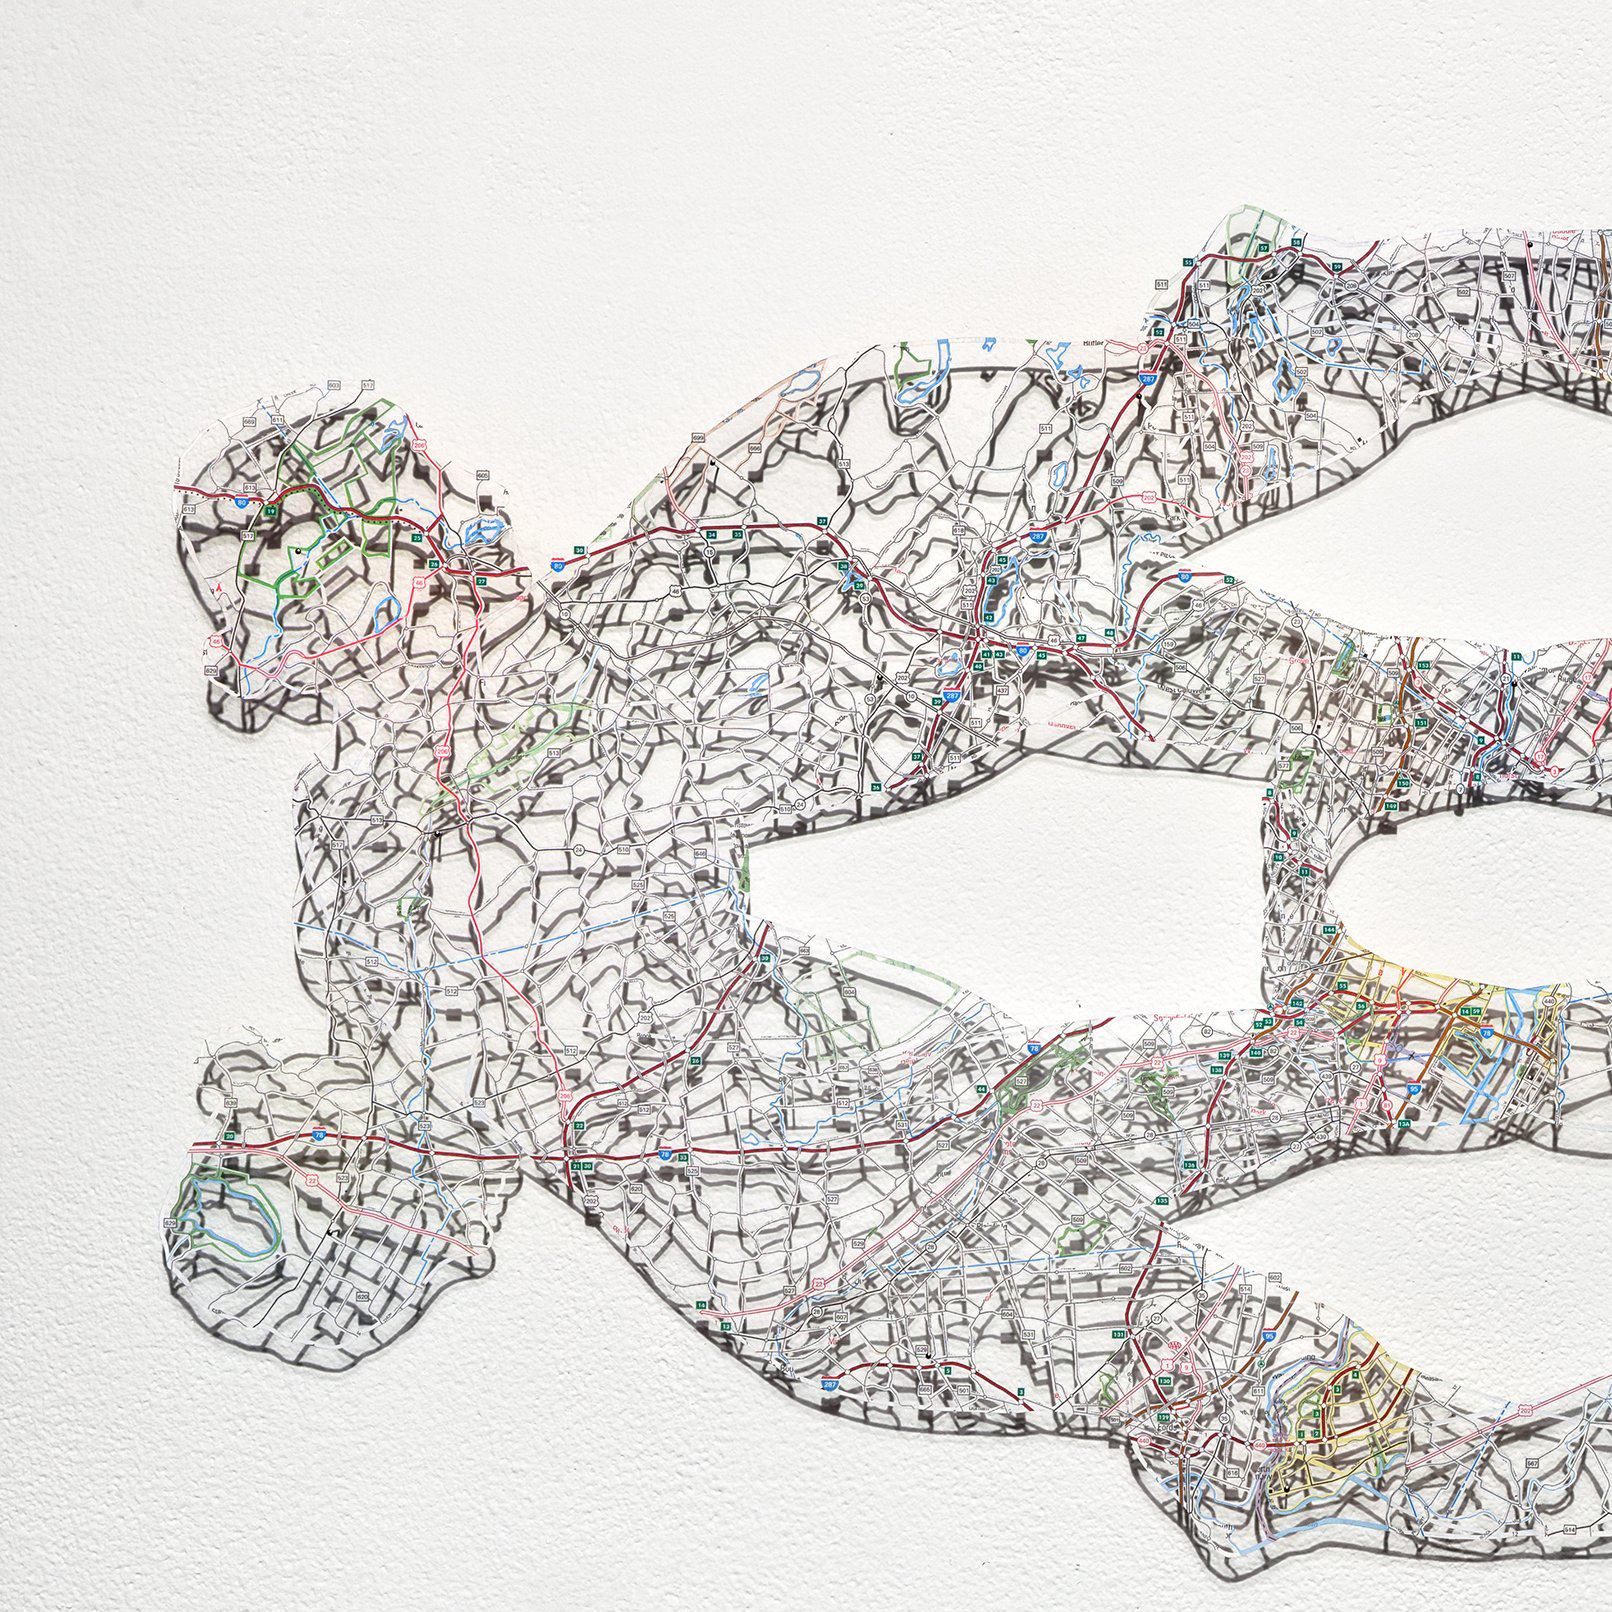 Untitled (Object) IV - Contemporary Mixed Media Art by Nikki Rosato